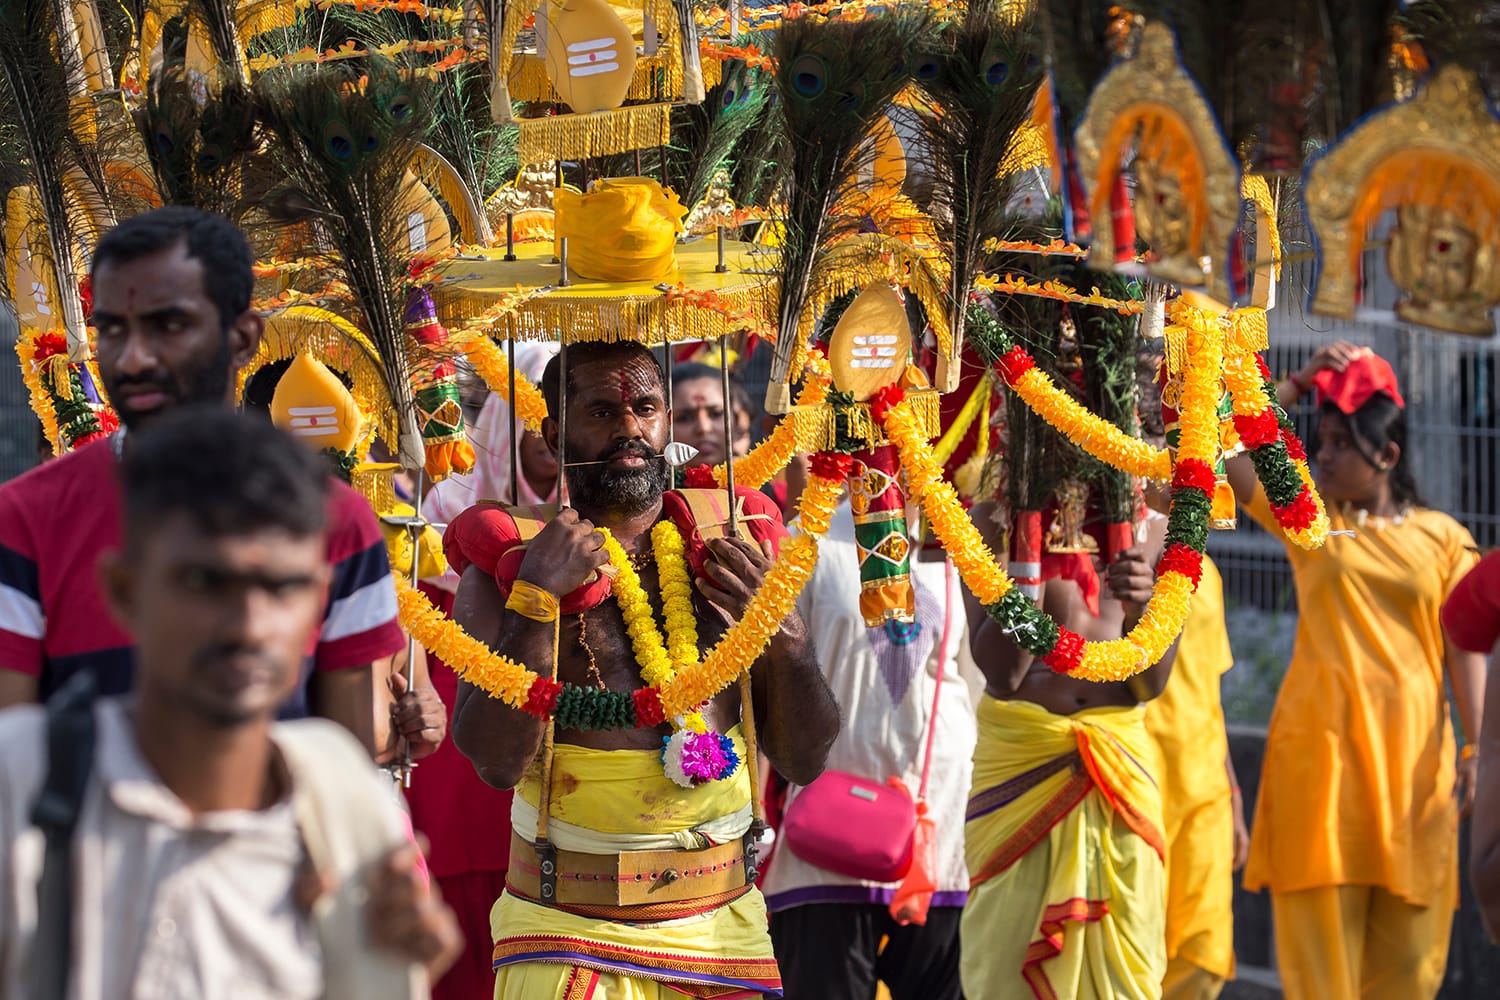 Το Thaipusam, ένα ζωντανό και πολύχρωμο φεστιβάλ που γιορτάζεται από τους Ινδουιστές, είναι μια εποχή αφοσίωσης, θυσιών και ευχαριστιών, αφιερωμένη στον Ινδουιστικό Θεό Murugan. Κουάλα Λουμπουρ, Μαλαισία